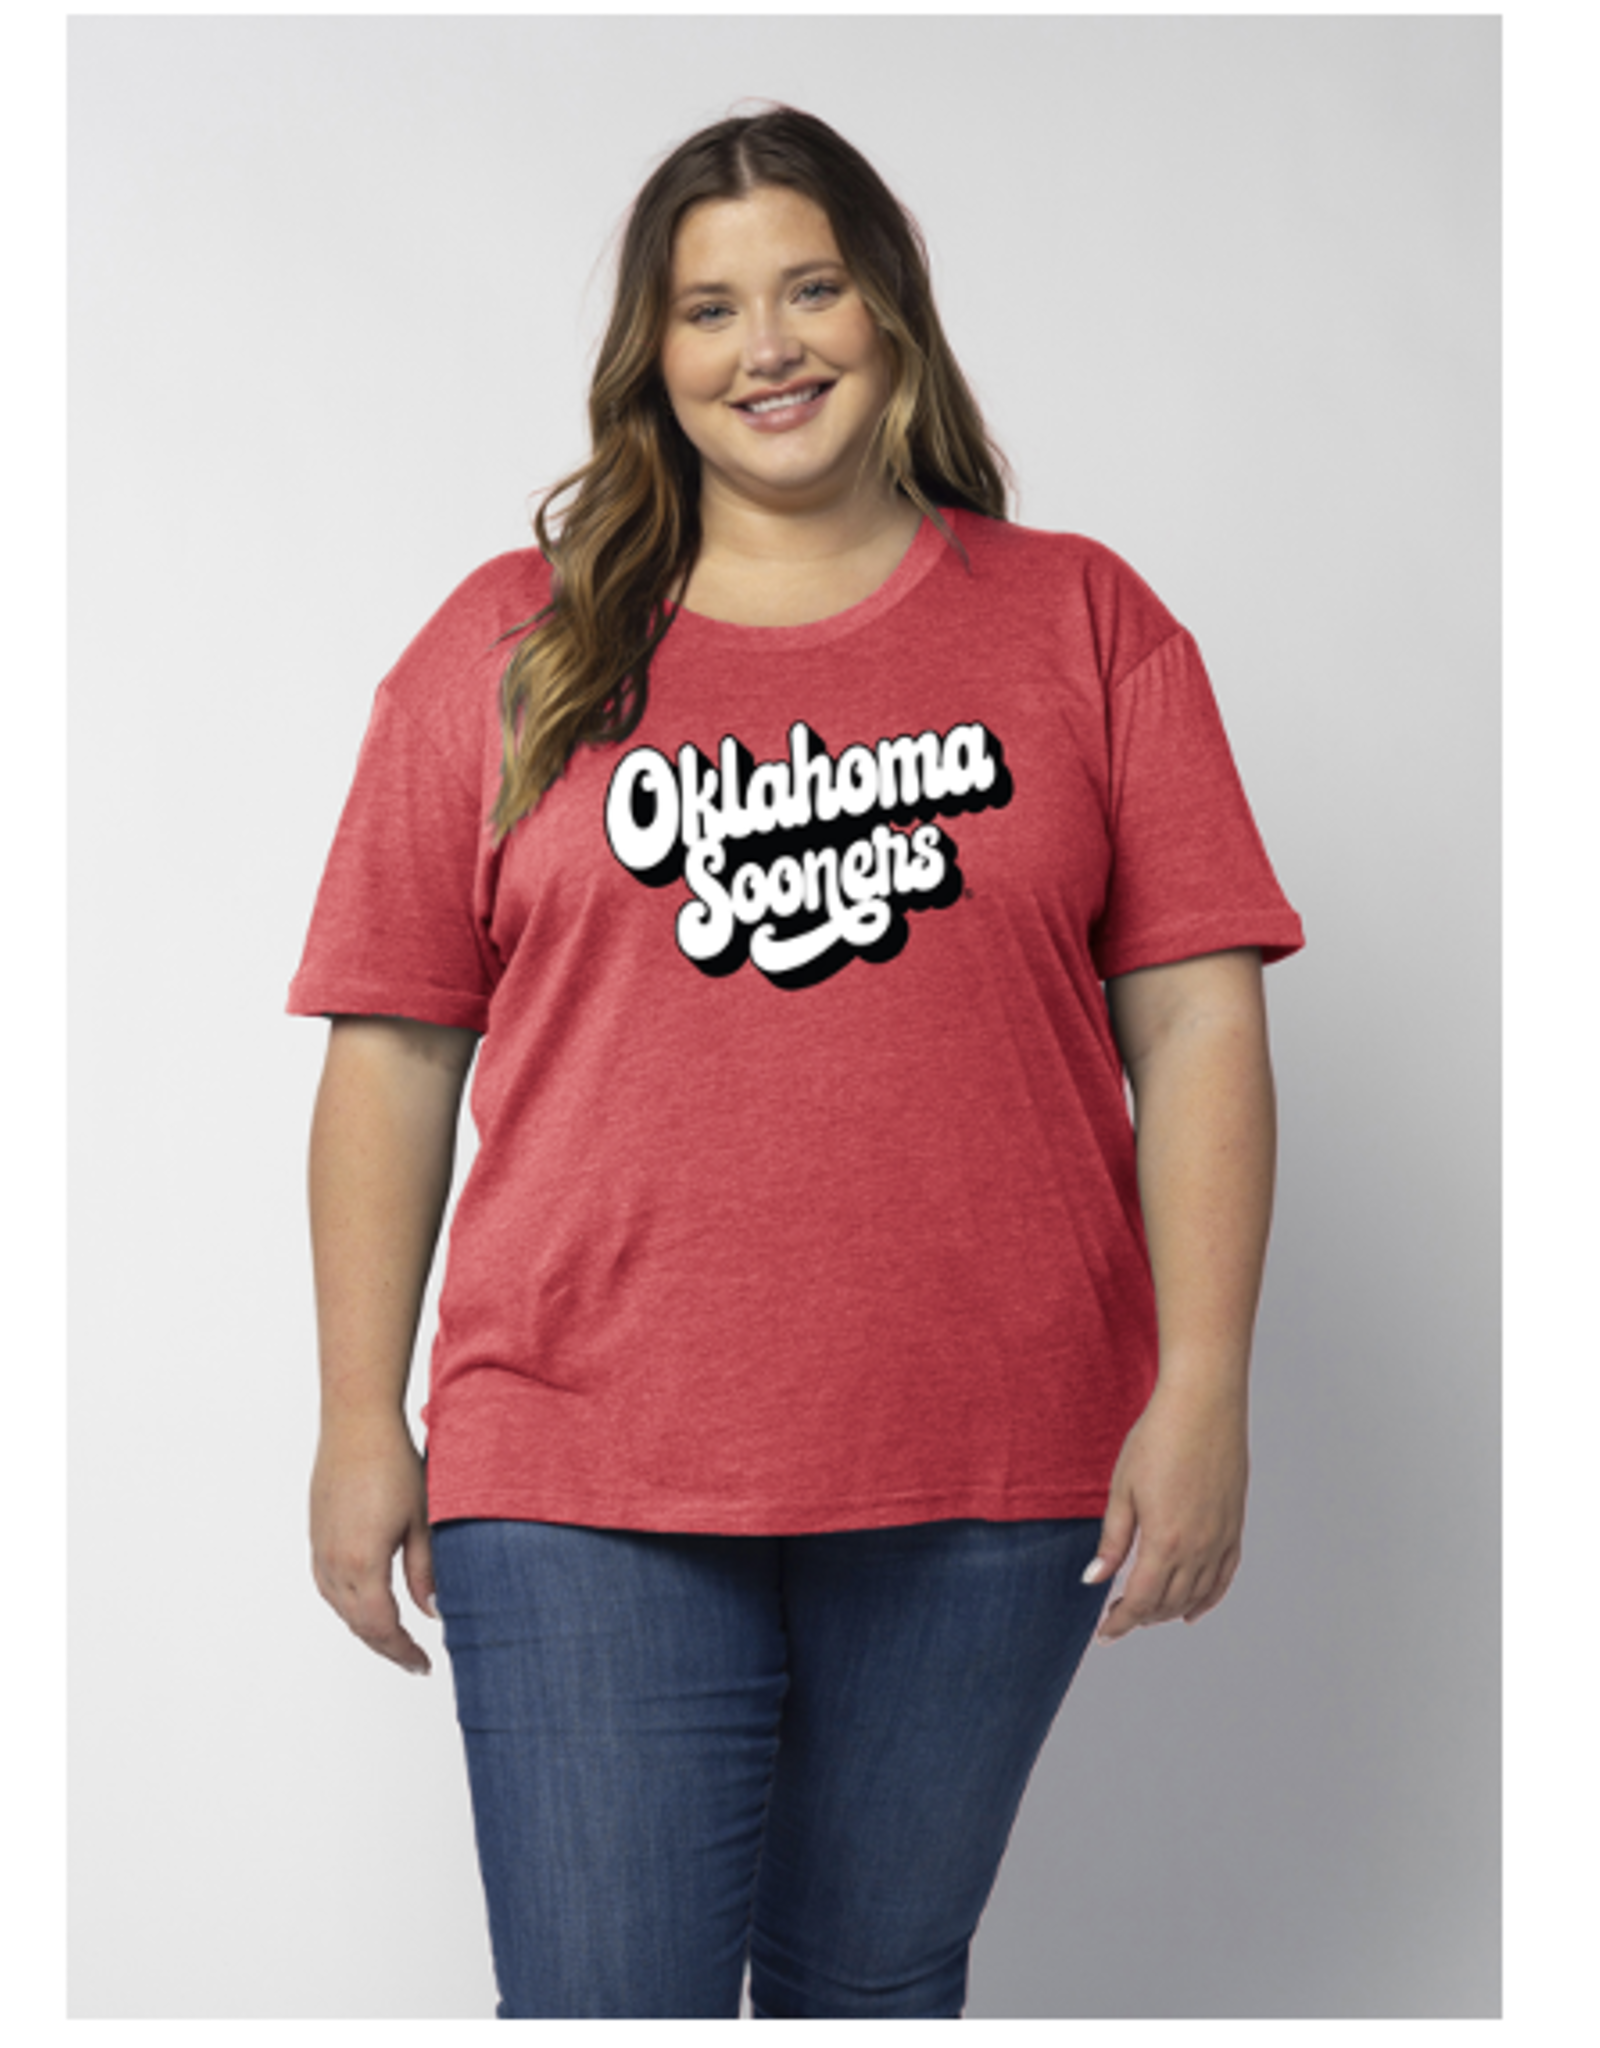 UGApparel Women's Oklahoma Sooners Must Have Tee